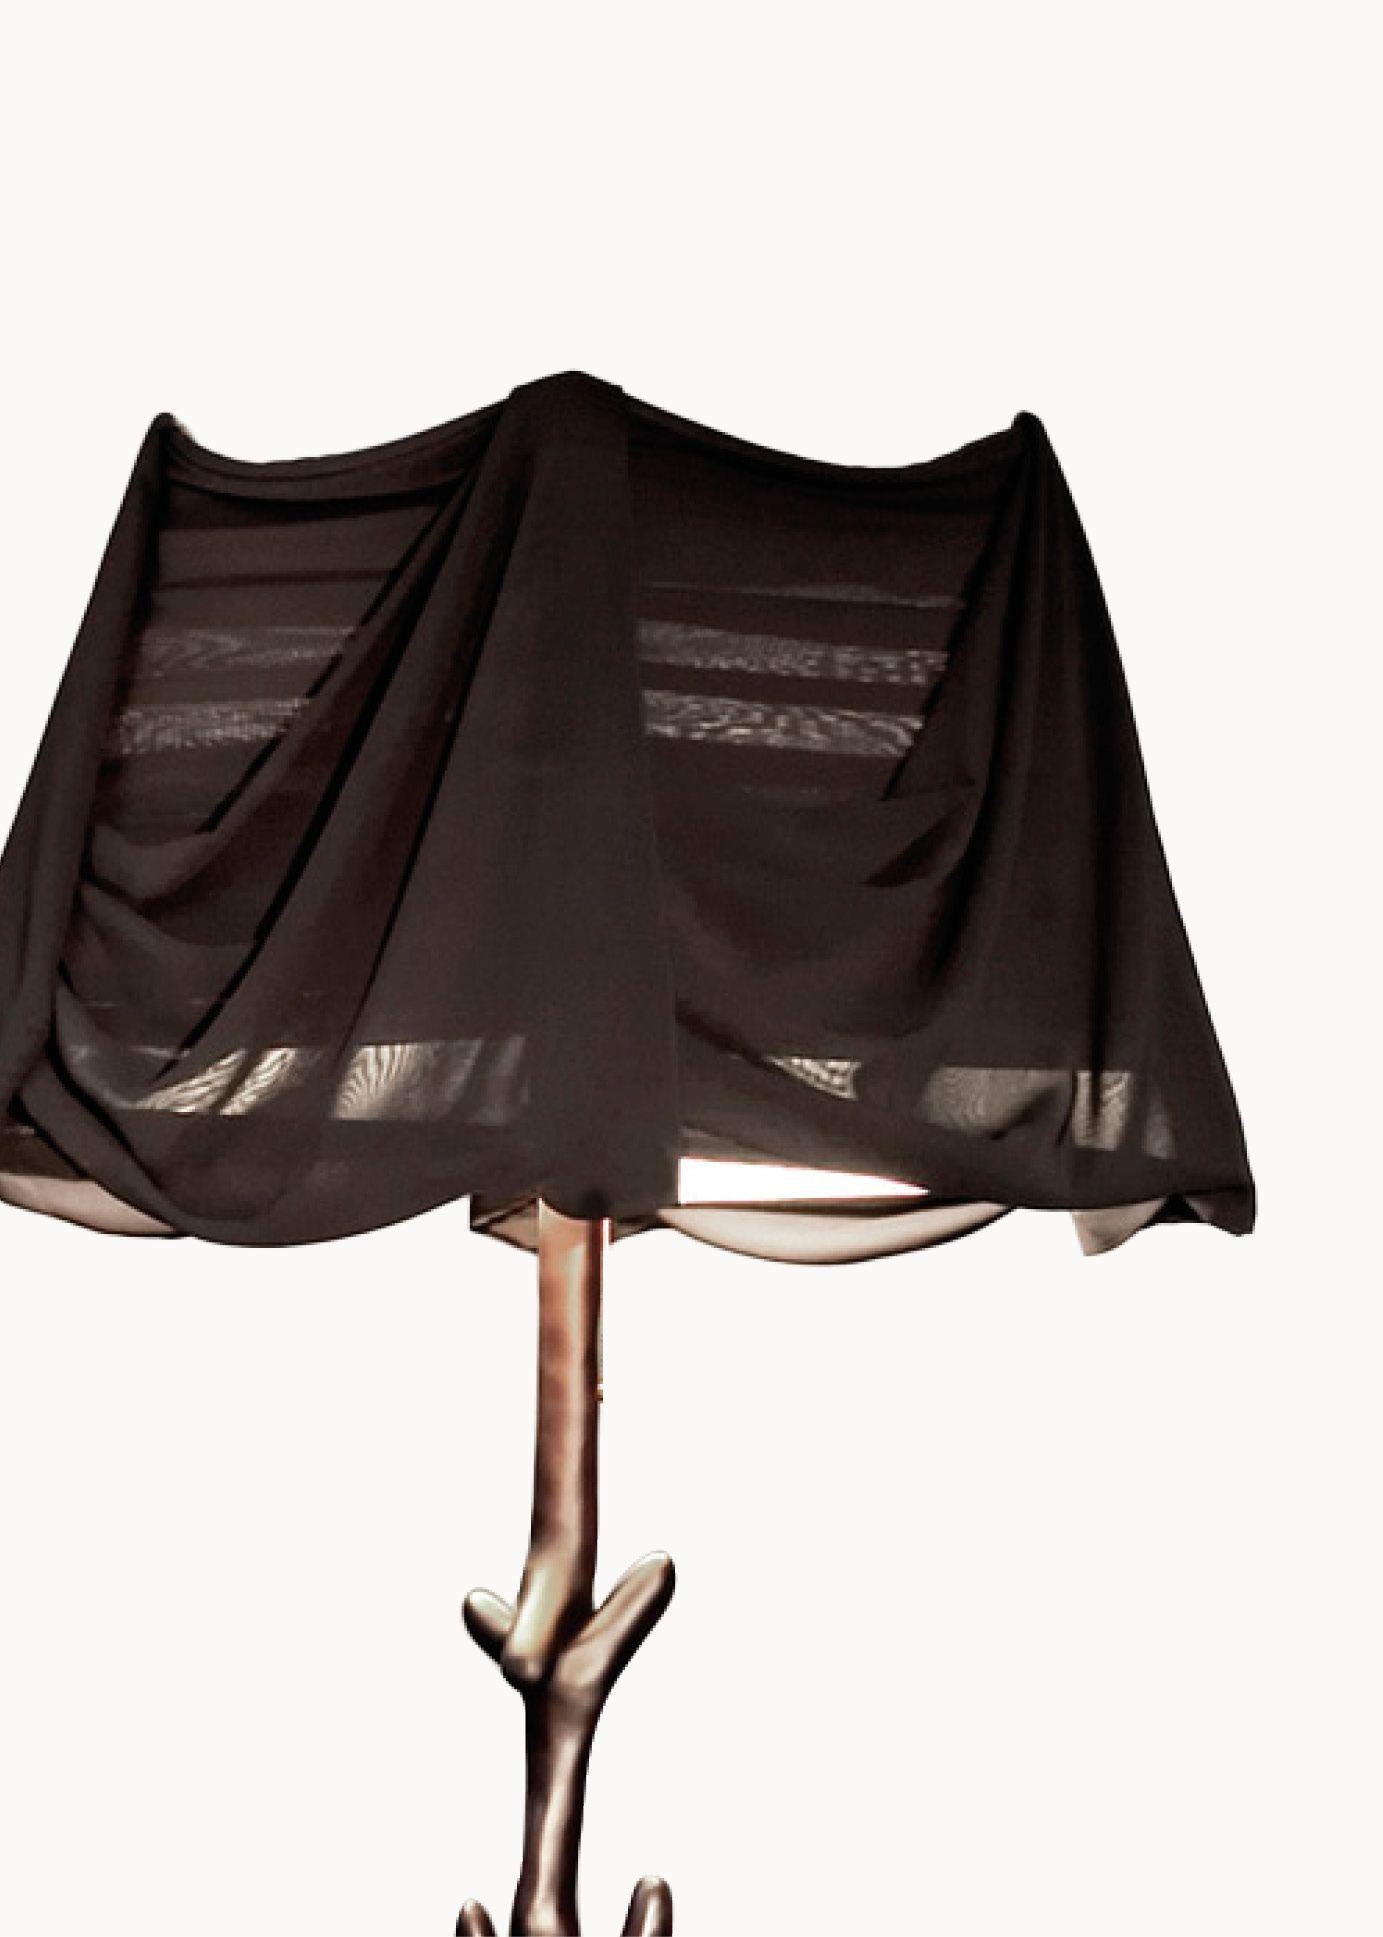 Lampe Muletas conçue par Salvador Dali et fabriquée par BD furniture à Barcelone.

Édition limitée
Bois de tilleul teinté satiné en noir.
Abat-jour en mousseline noire transparente.

Des matériaux raffinés et une fabrication artisanale pour remettre